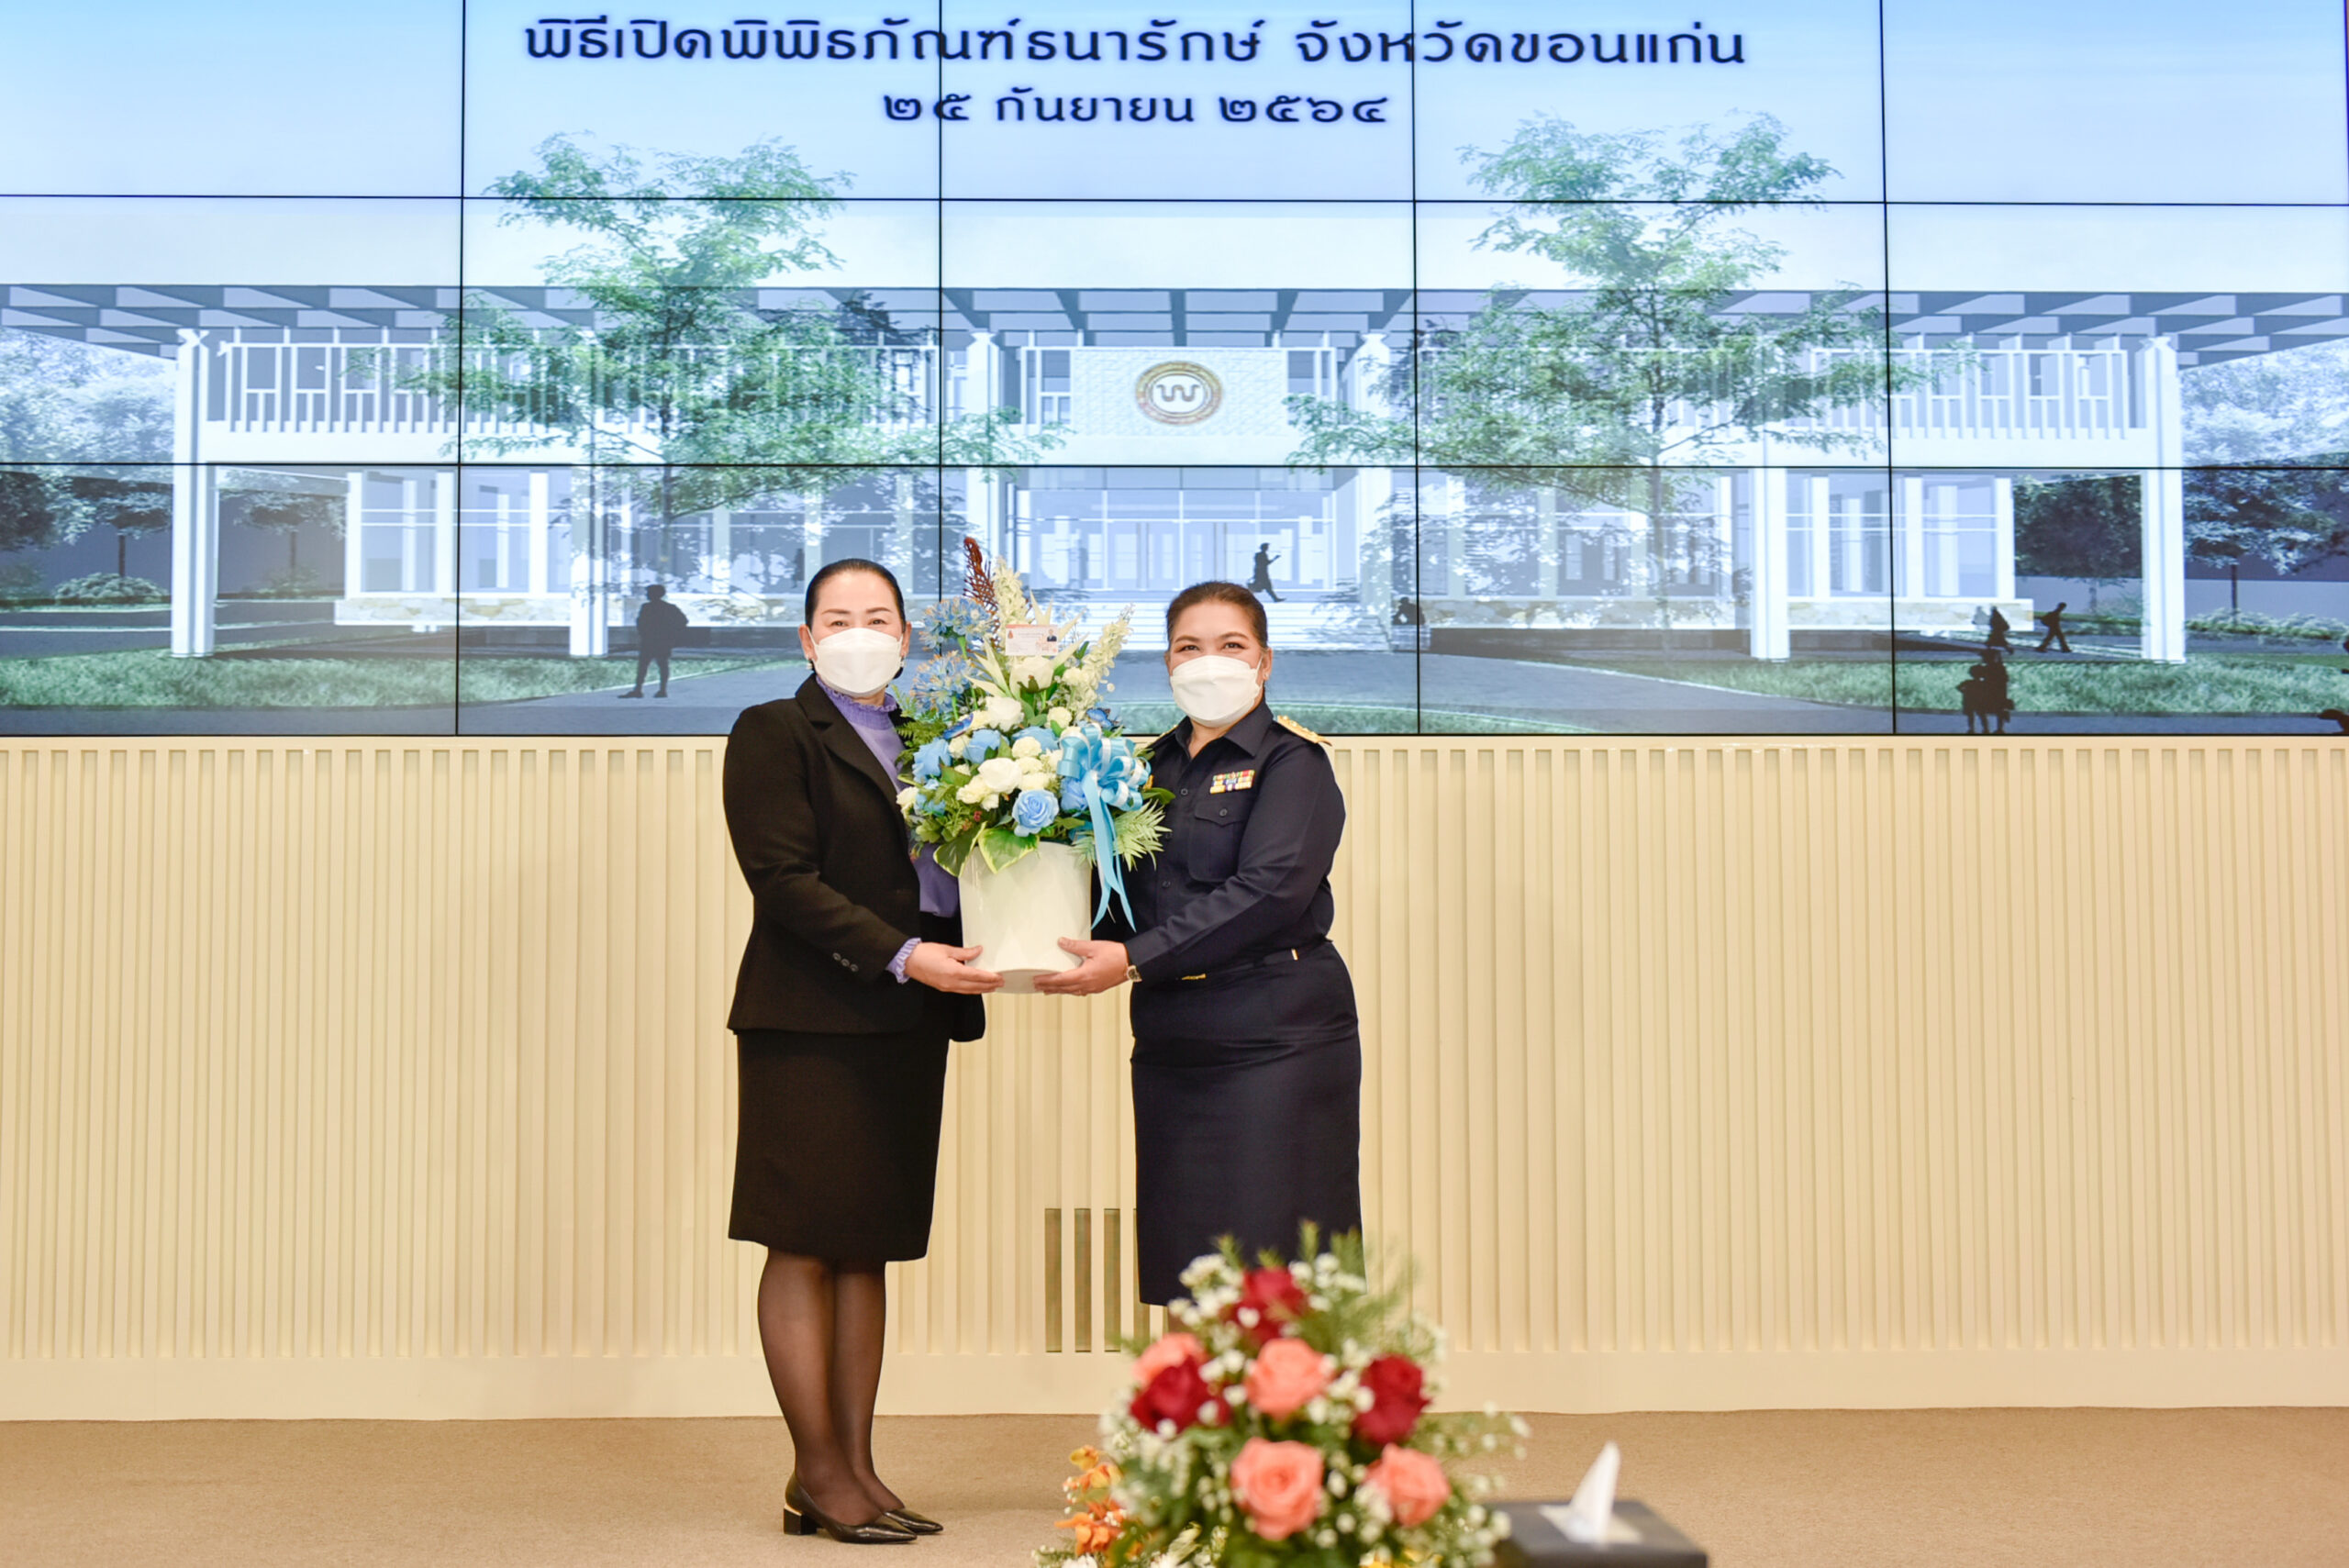 มข.ร่วมแสดงความยินดี พิธีเปิดพิพิธภัณฑ์ธนารักษ์ จ.ขอนแก่น แหล่งเรียนรู้เงินตราไทย